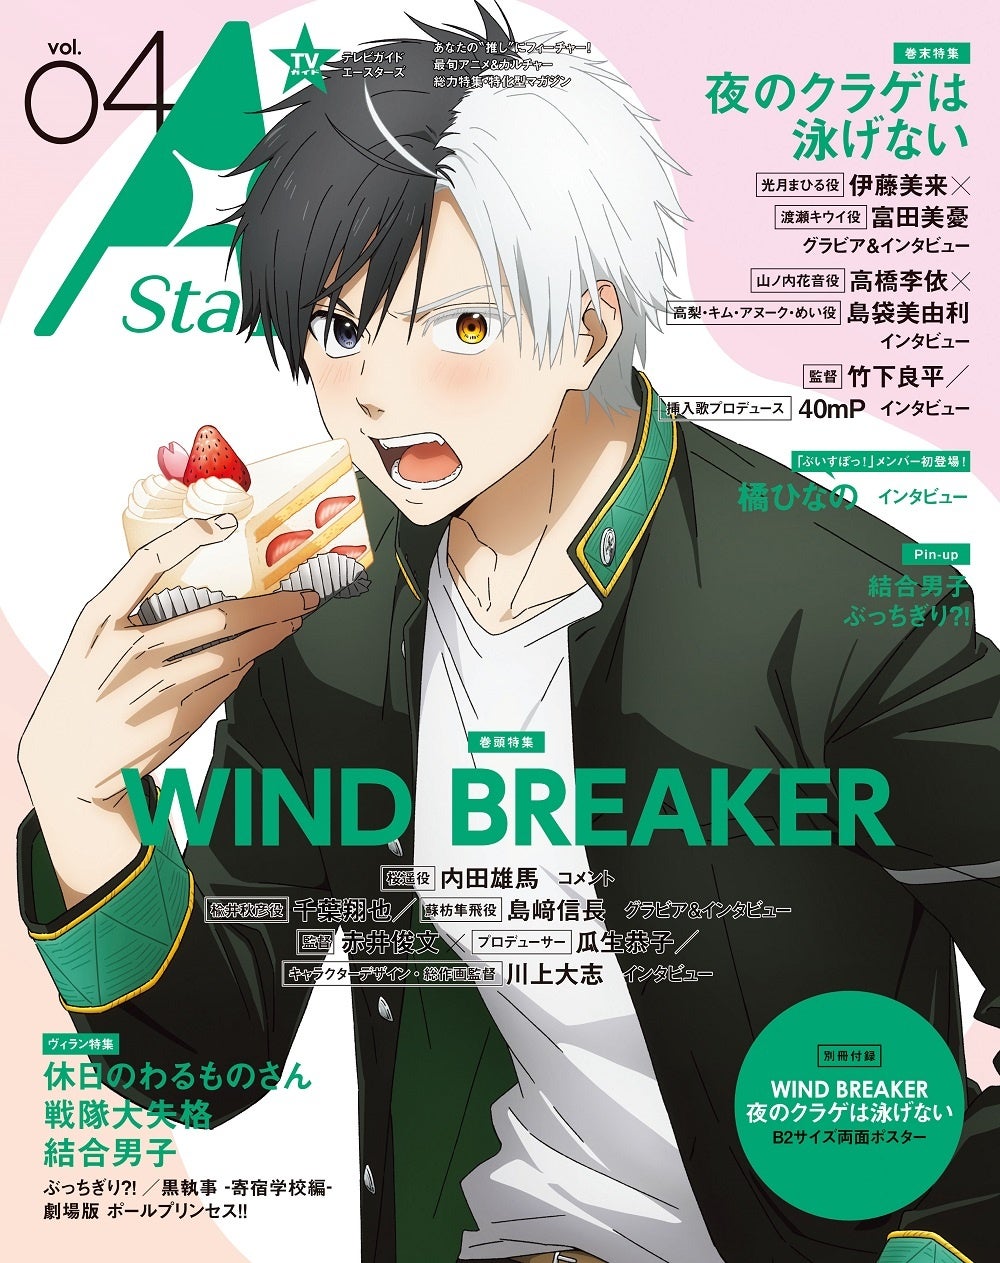 アニメ&カルチャー誌「TVガイド A Stars vol.04」本日発売！ 表紙を飾るのは「WIND BREAKER」、裏表紙は「夜のクラゲは泳げない」